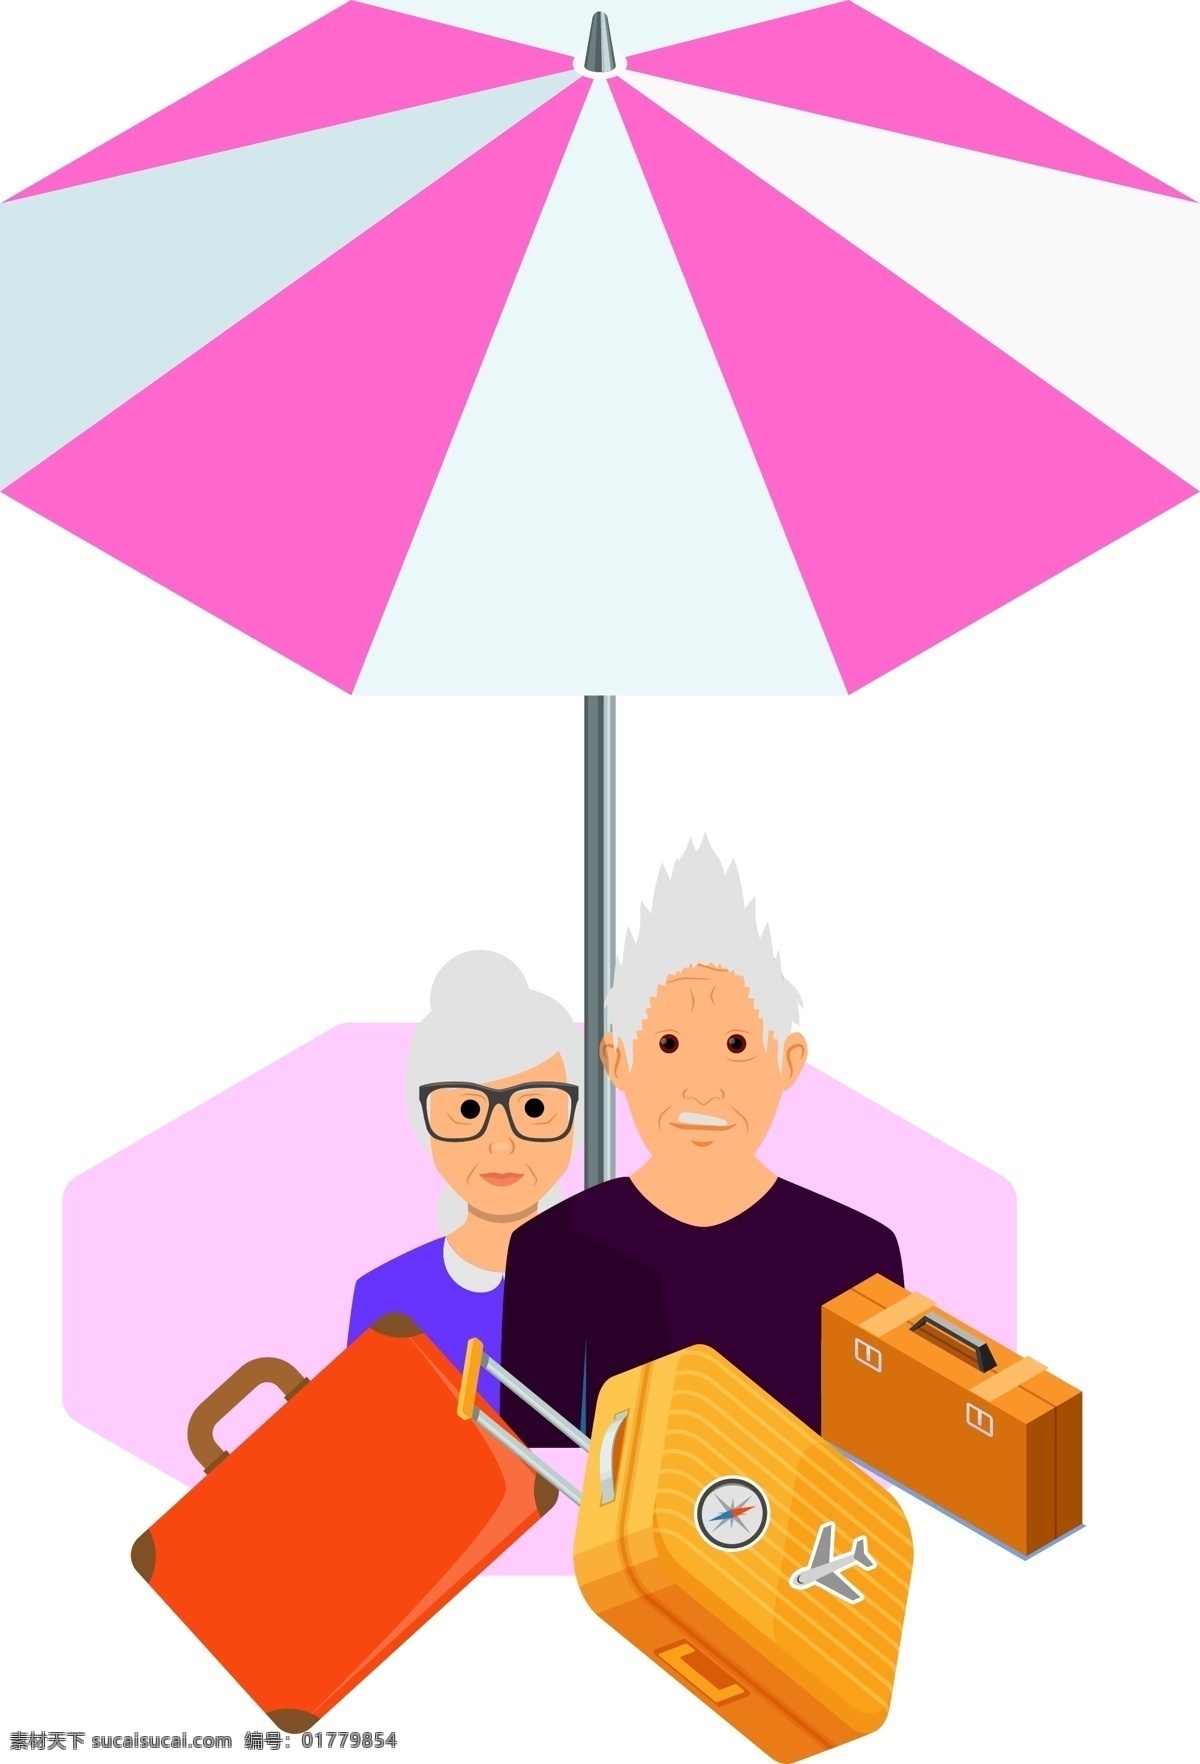 夏季 出游 元素 背景 遮阳伞 人物 旅行箱 背包 卡通